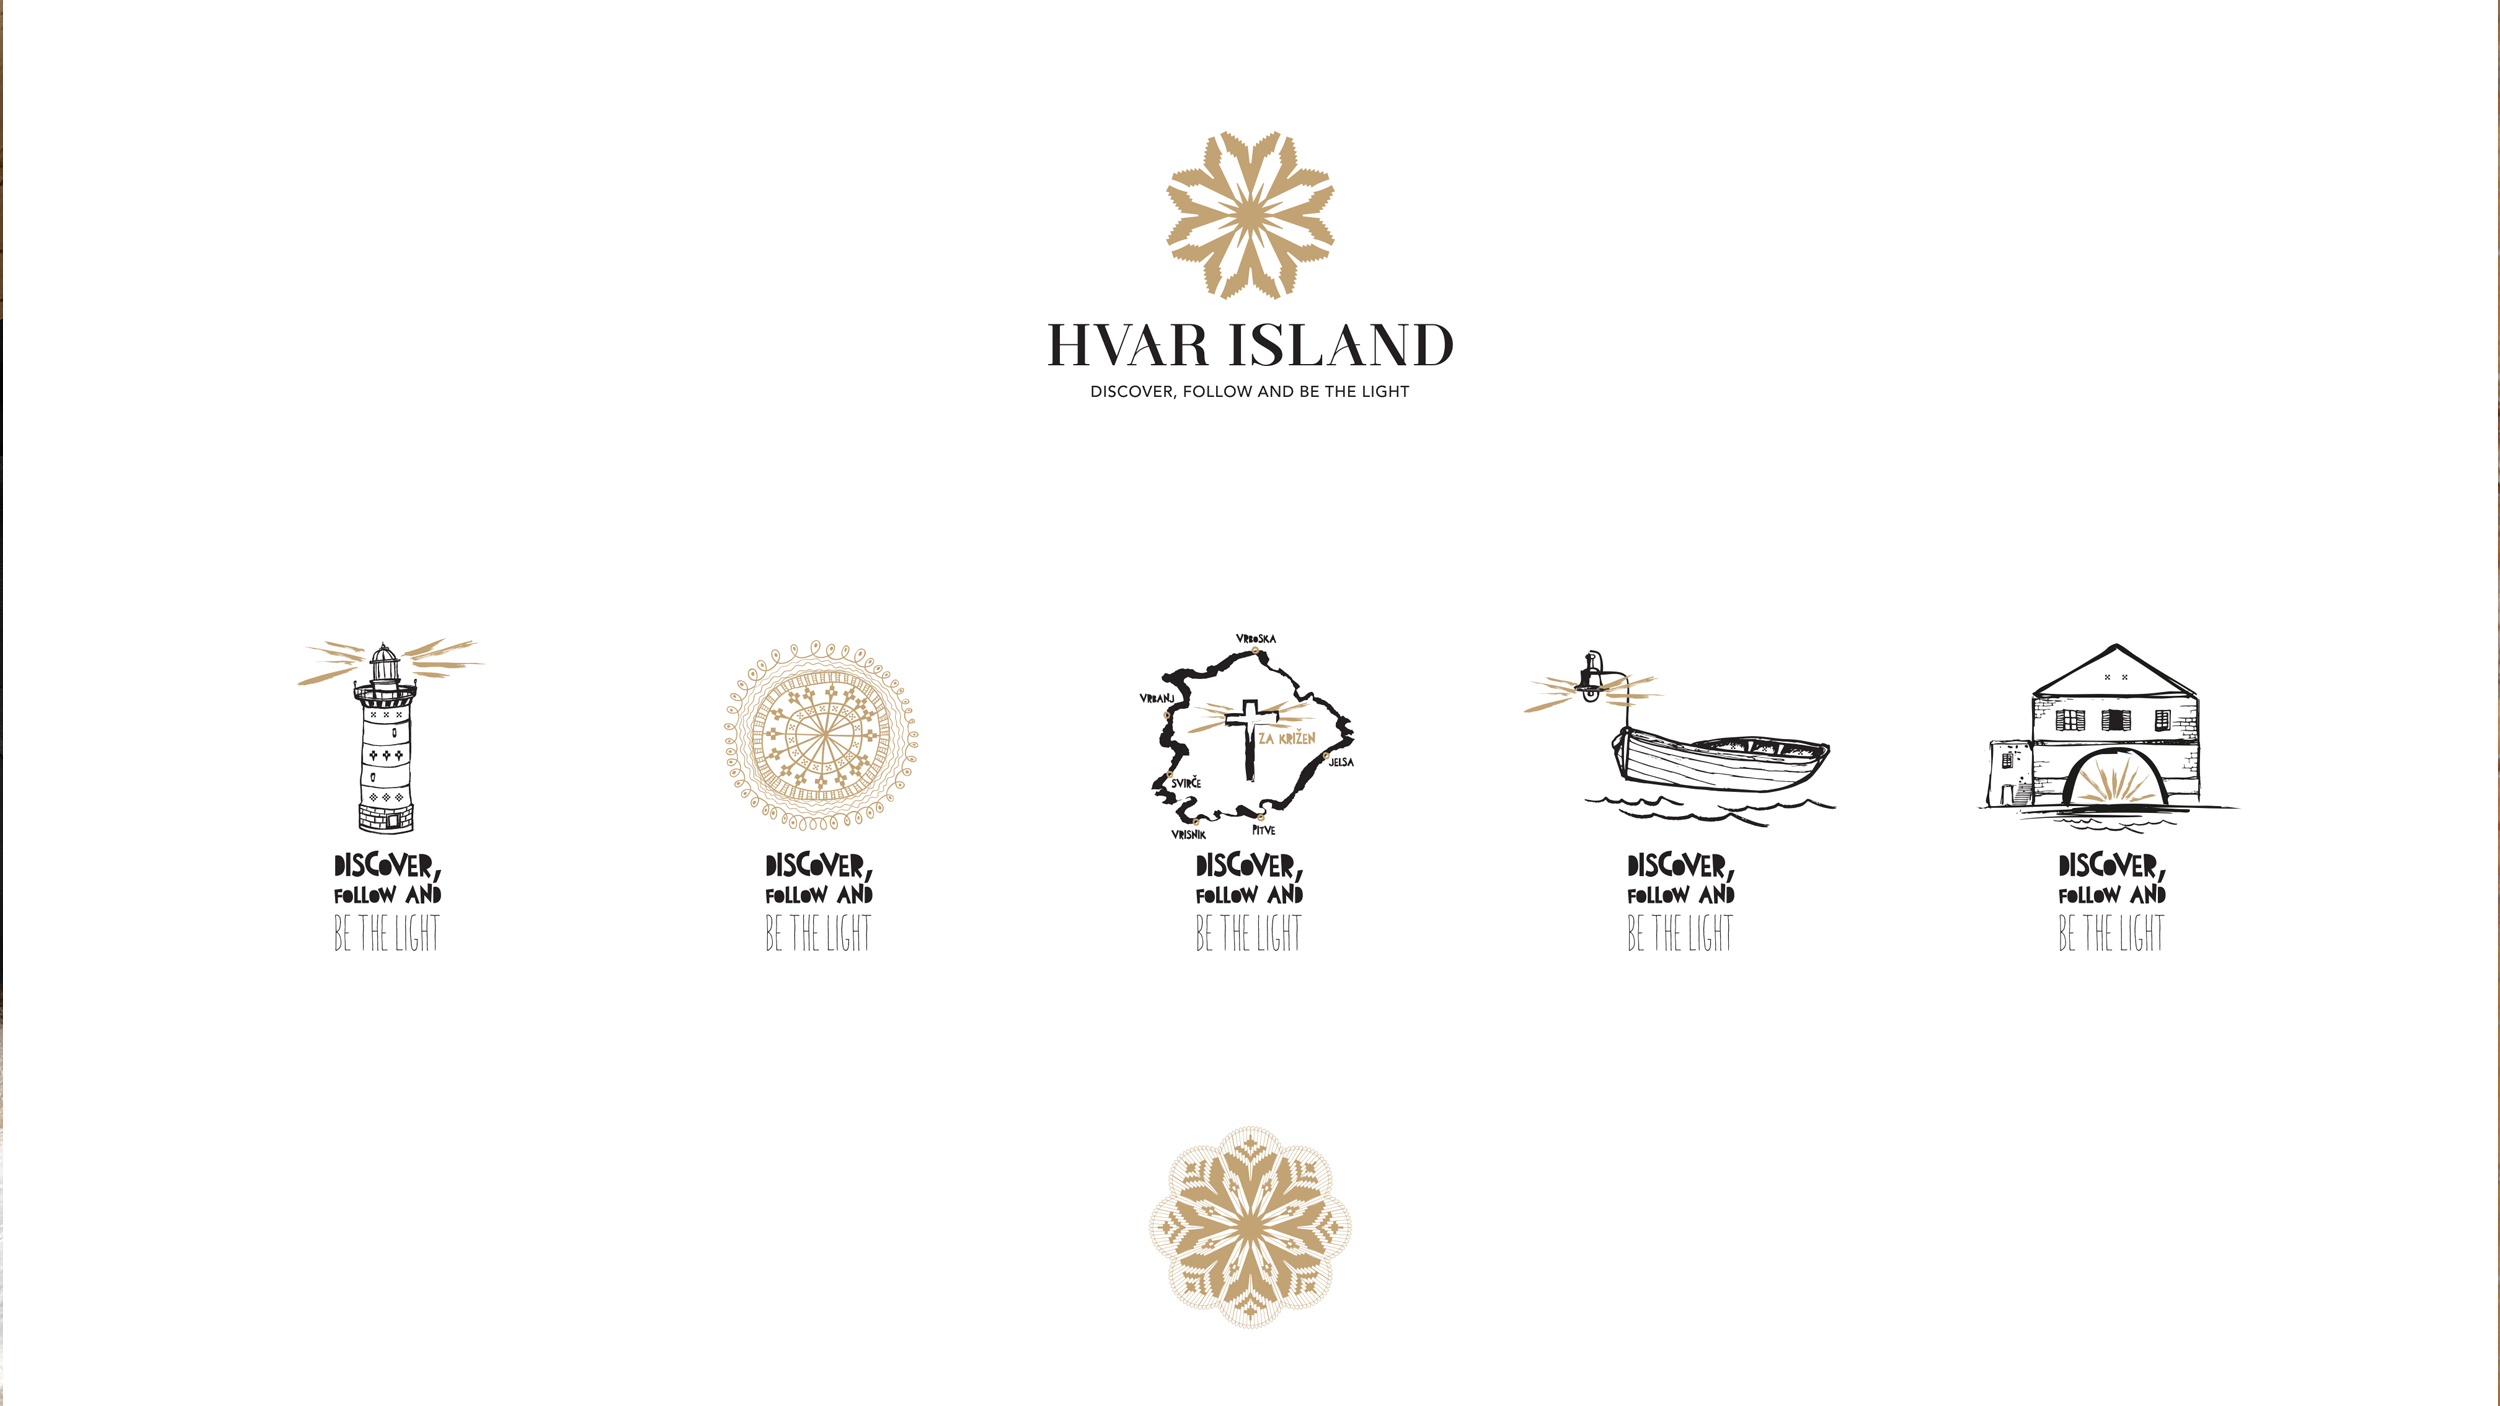 Fabular’s Branding of the Island of Hvar